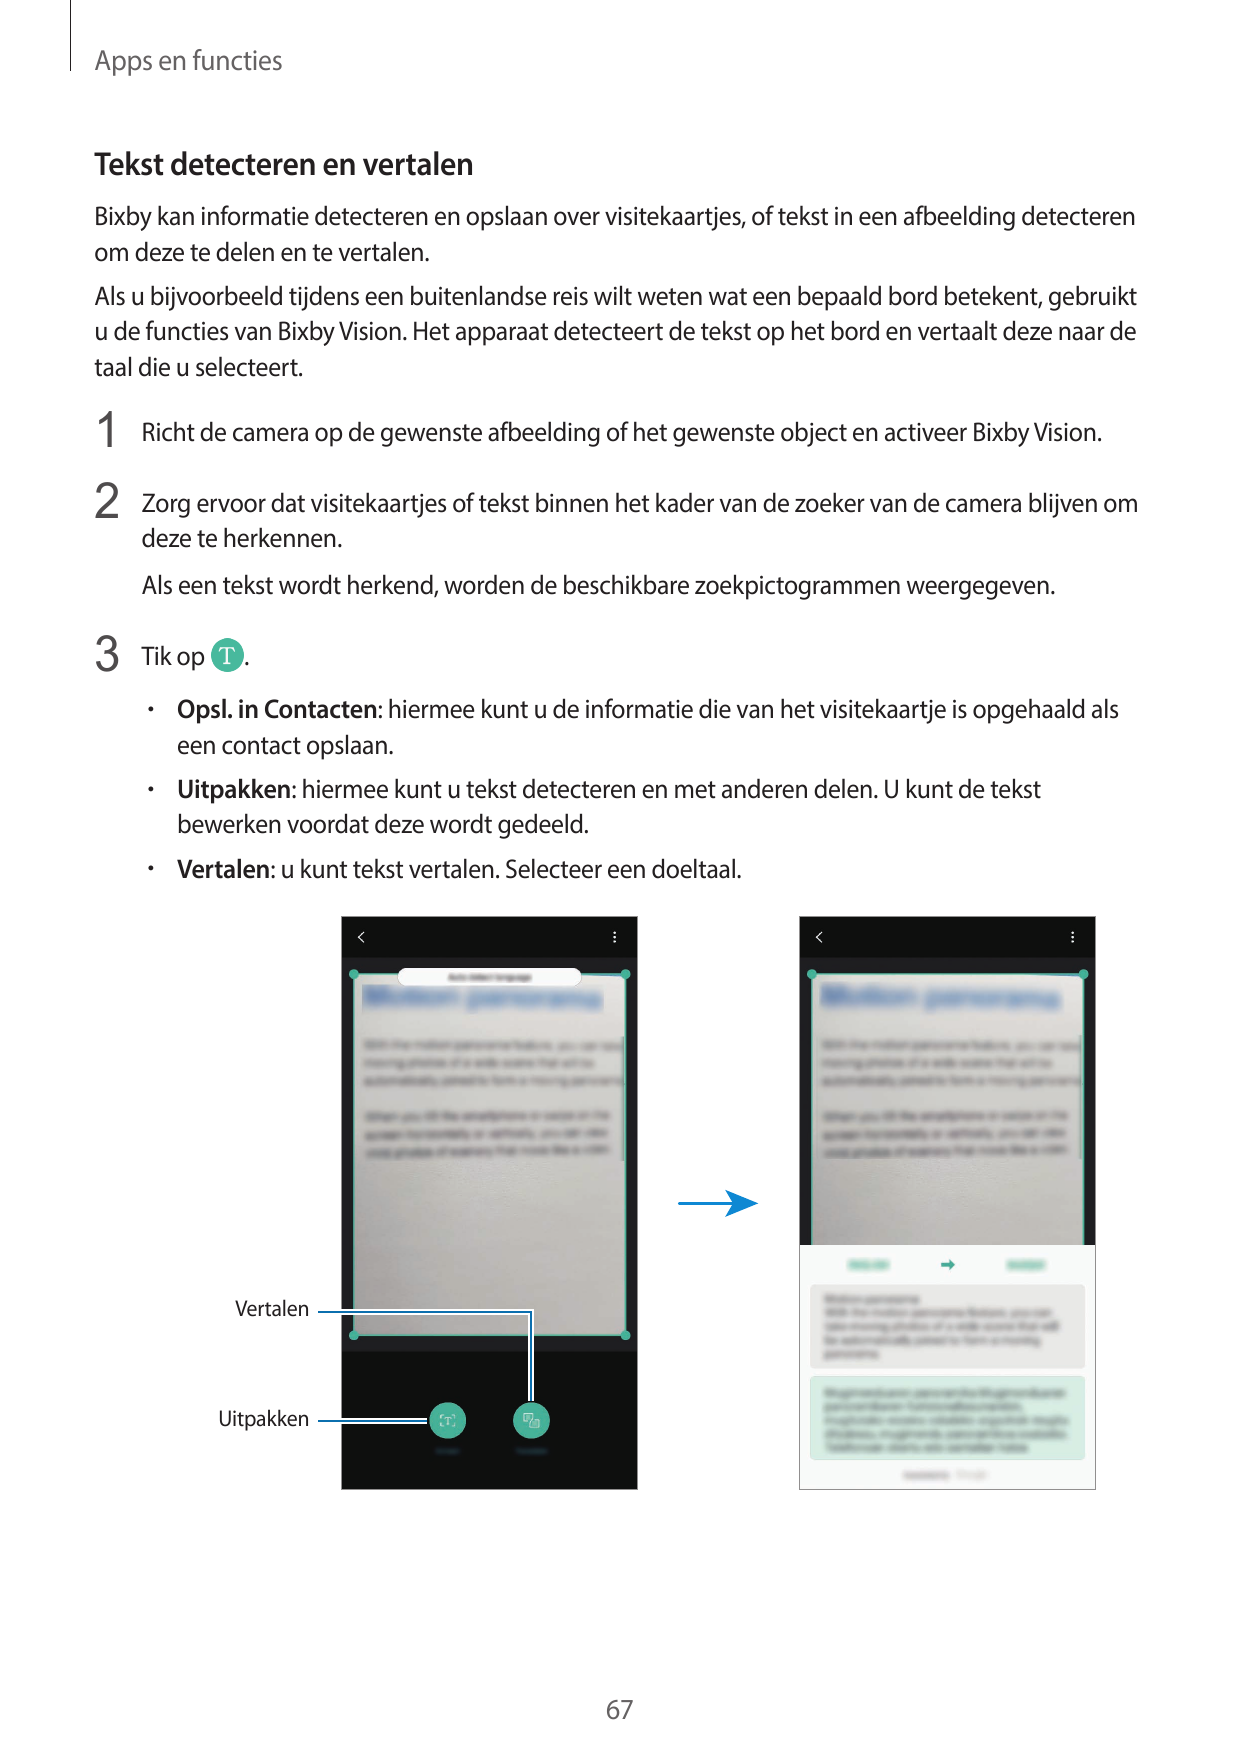 Apps en functiesTekst detecteren en vertalenBixby kan informatie detecteren en opslaan over visitekaartjes, of tekst in een afbe